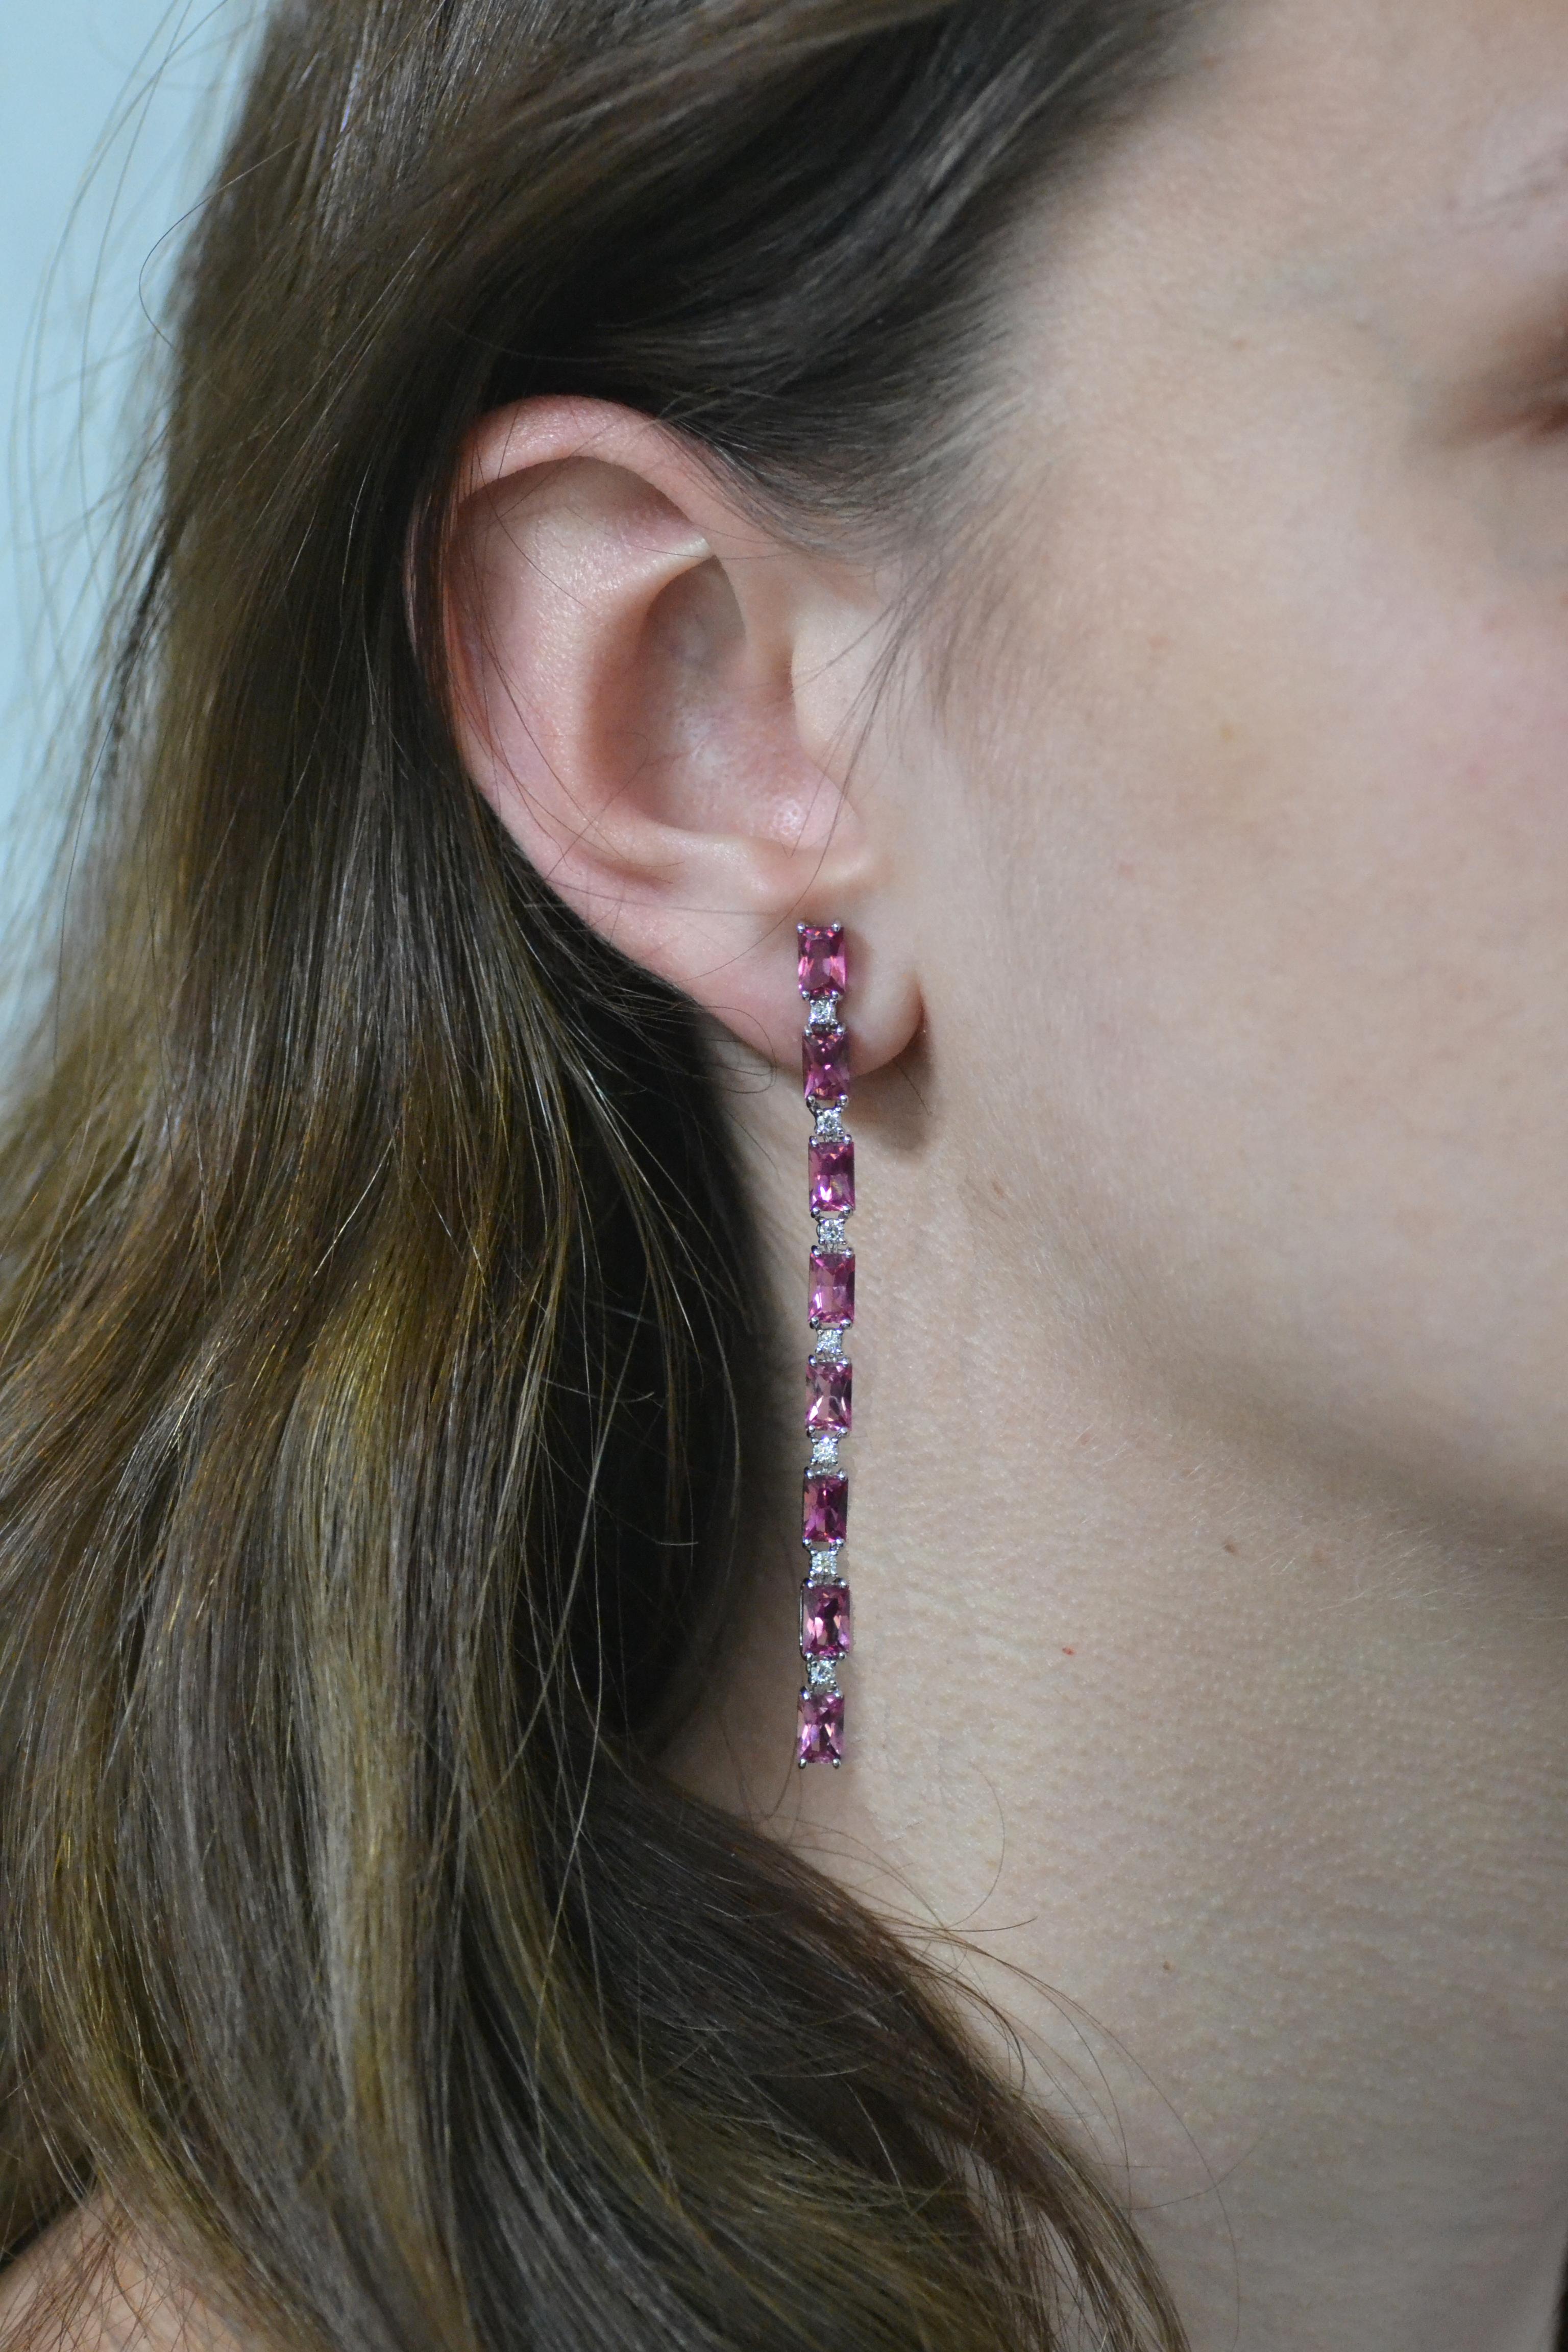 Fabriquée à la main en Italie, dans l'atelier de Margherita Burgener, cette élégante paire de boucles d'oreilles présente une ligne de 8 tourmalines roses naturelles taillées en baguette, alternant avec un seul diamant (carat 0,035).
Souple, légère,